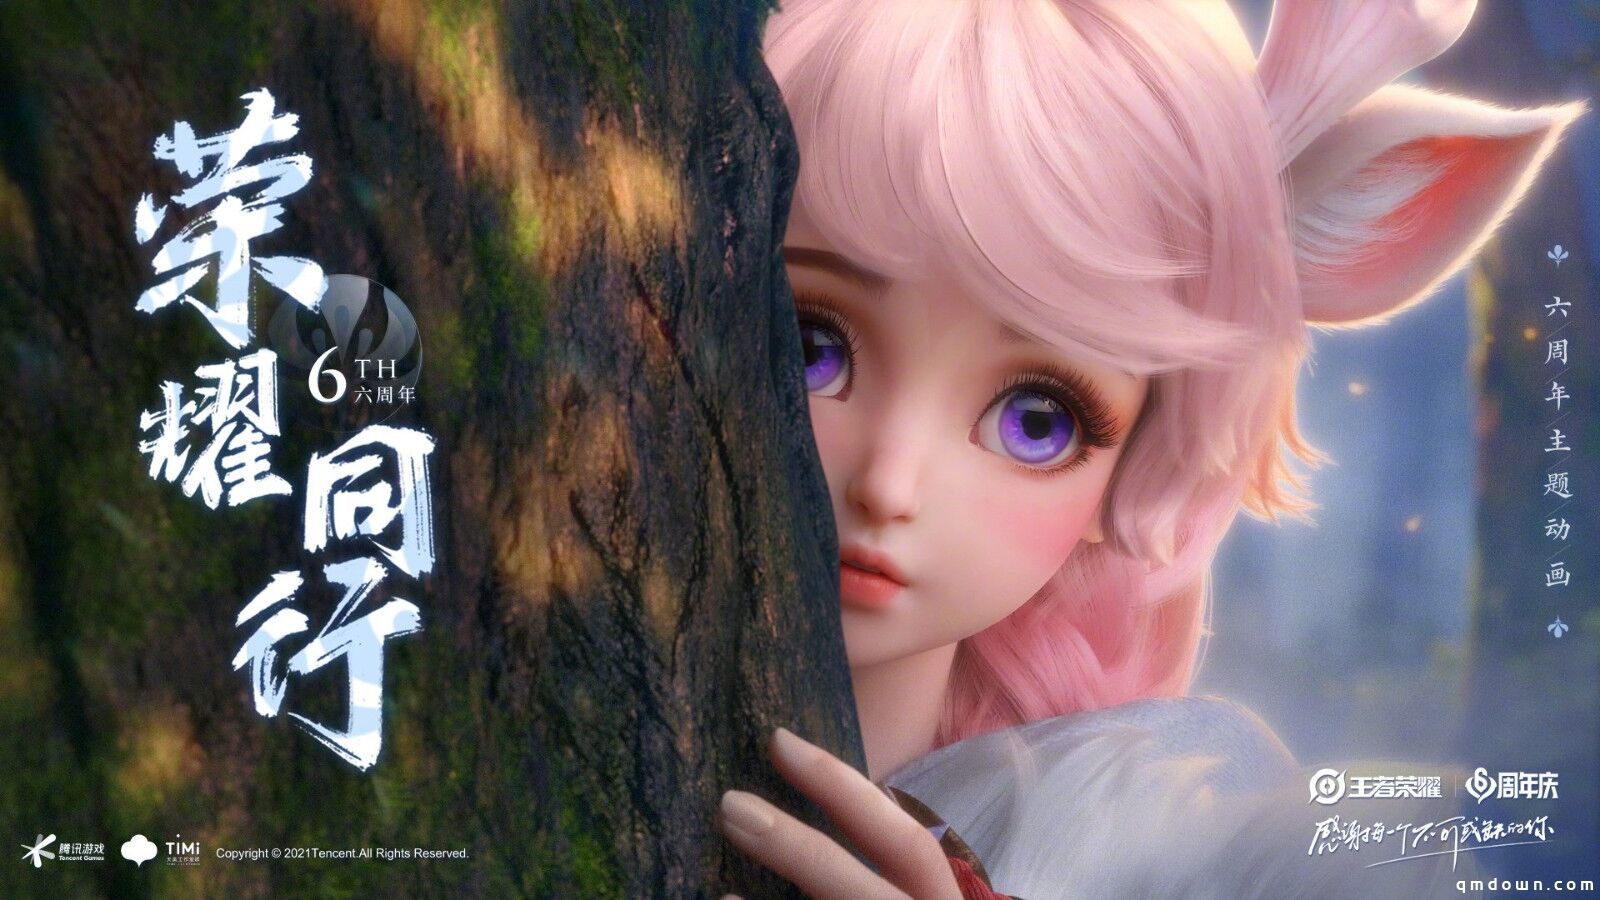 《王者荣耀》公布六周年纪念CG动画 彩蛋超多